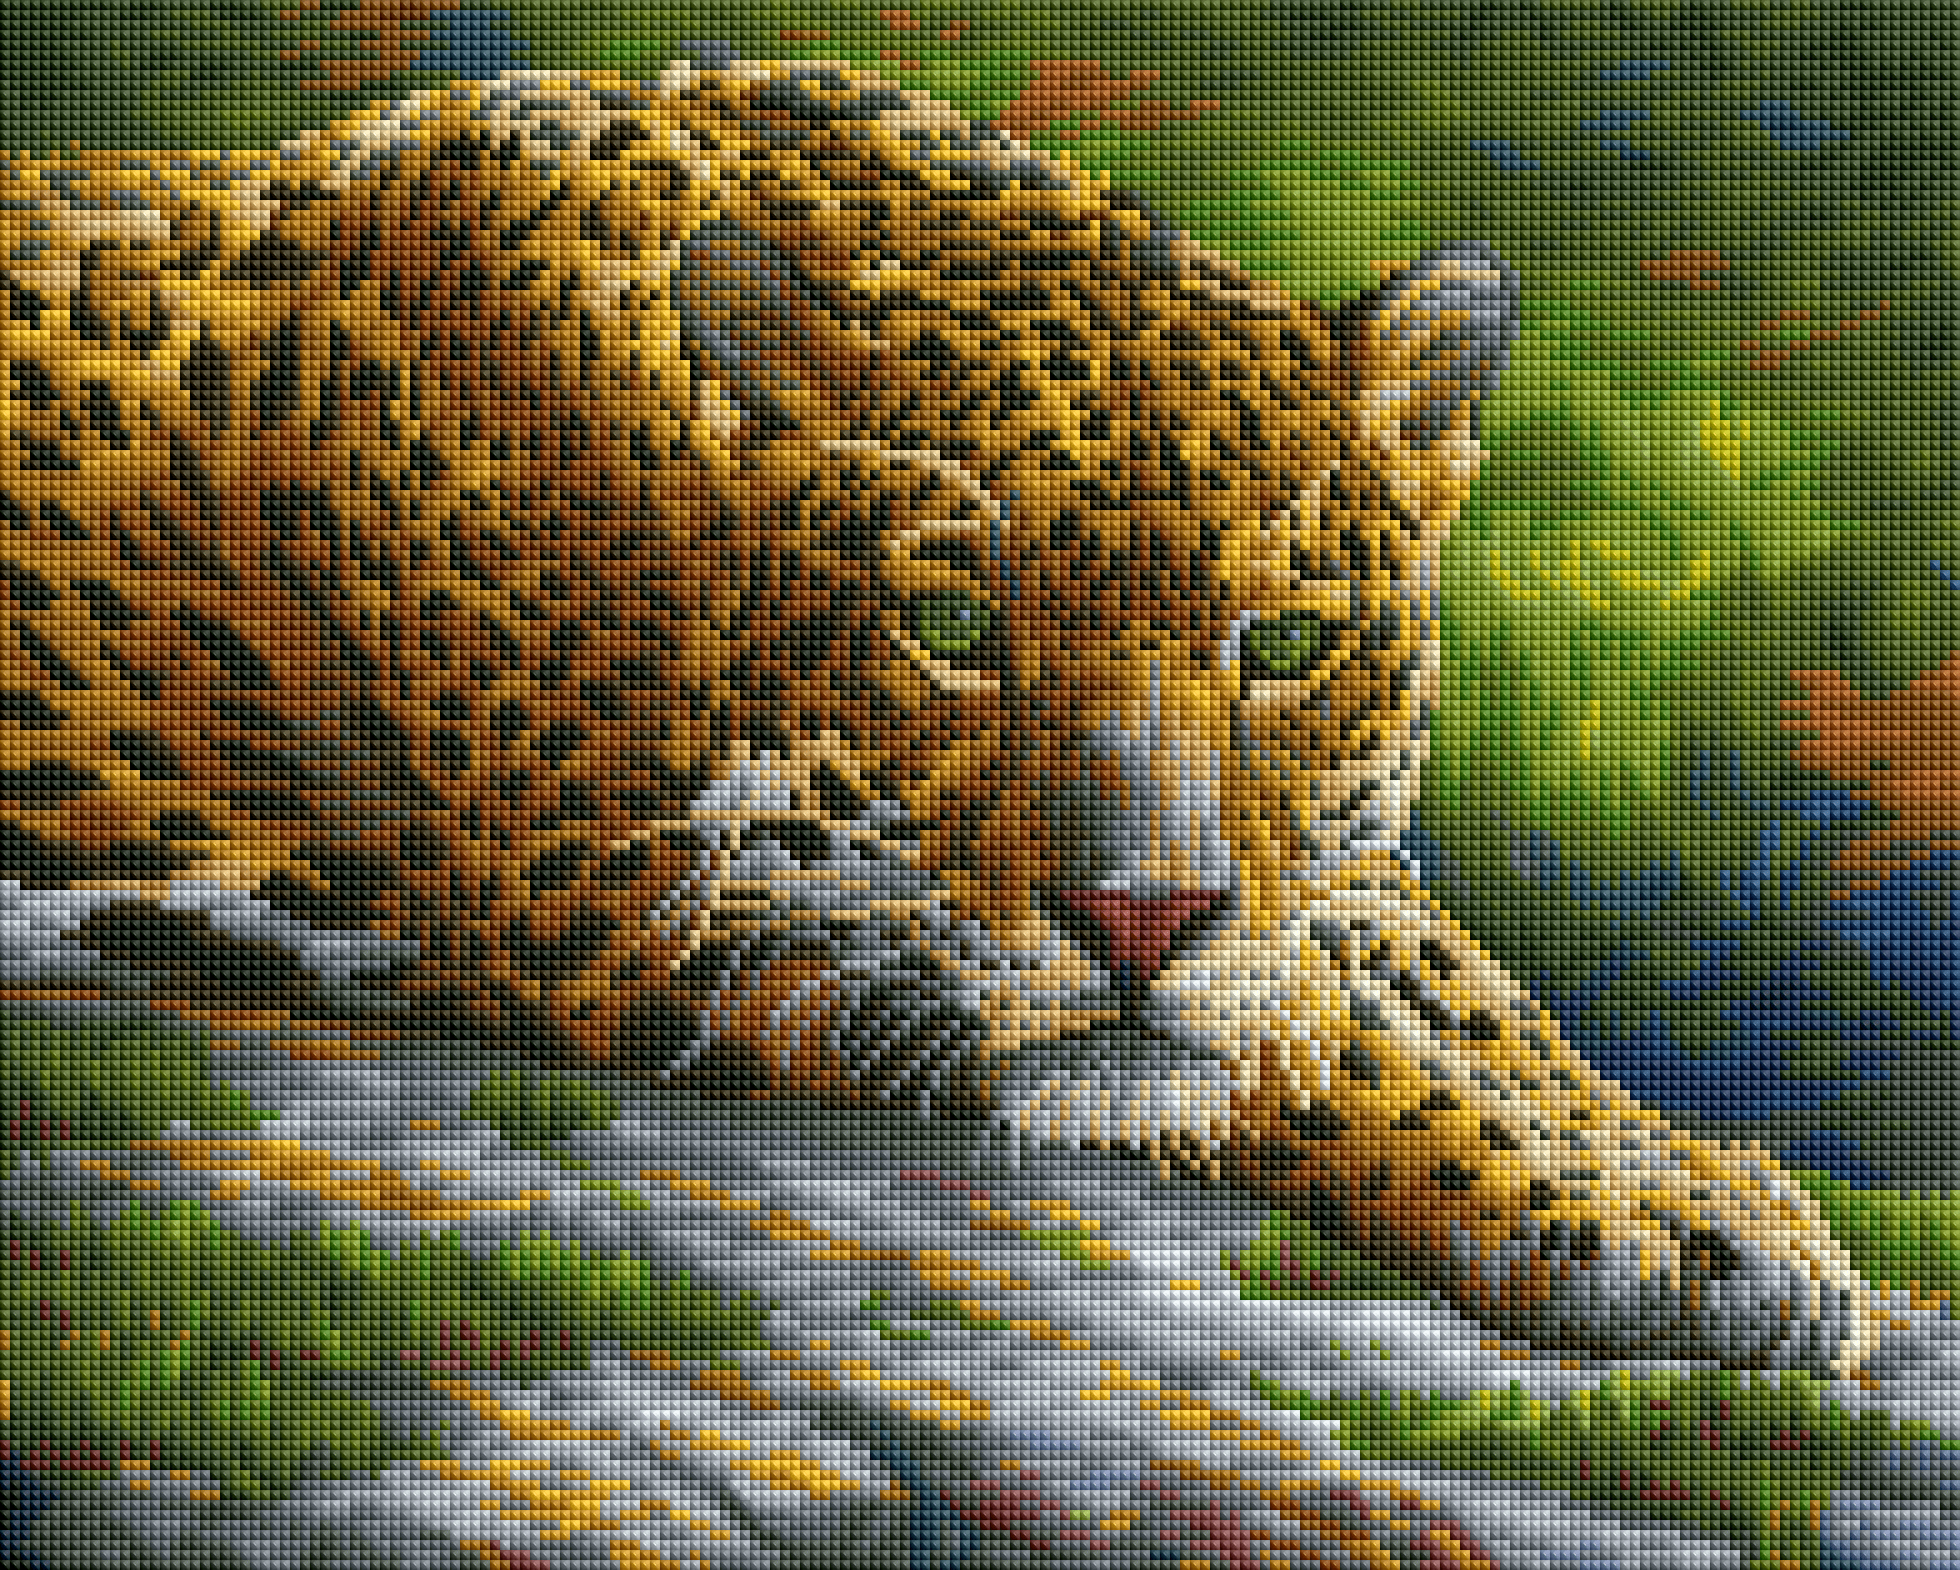 Peaceful Jaguar